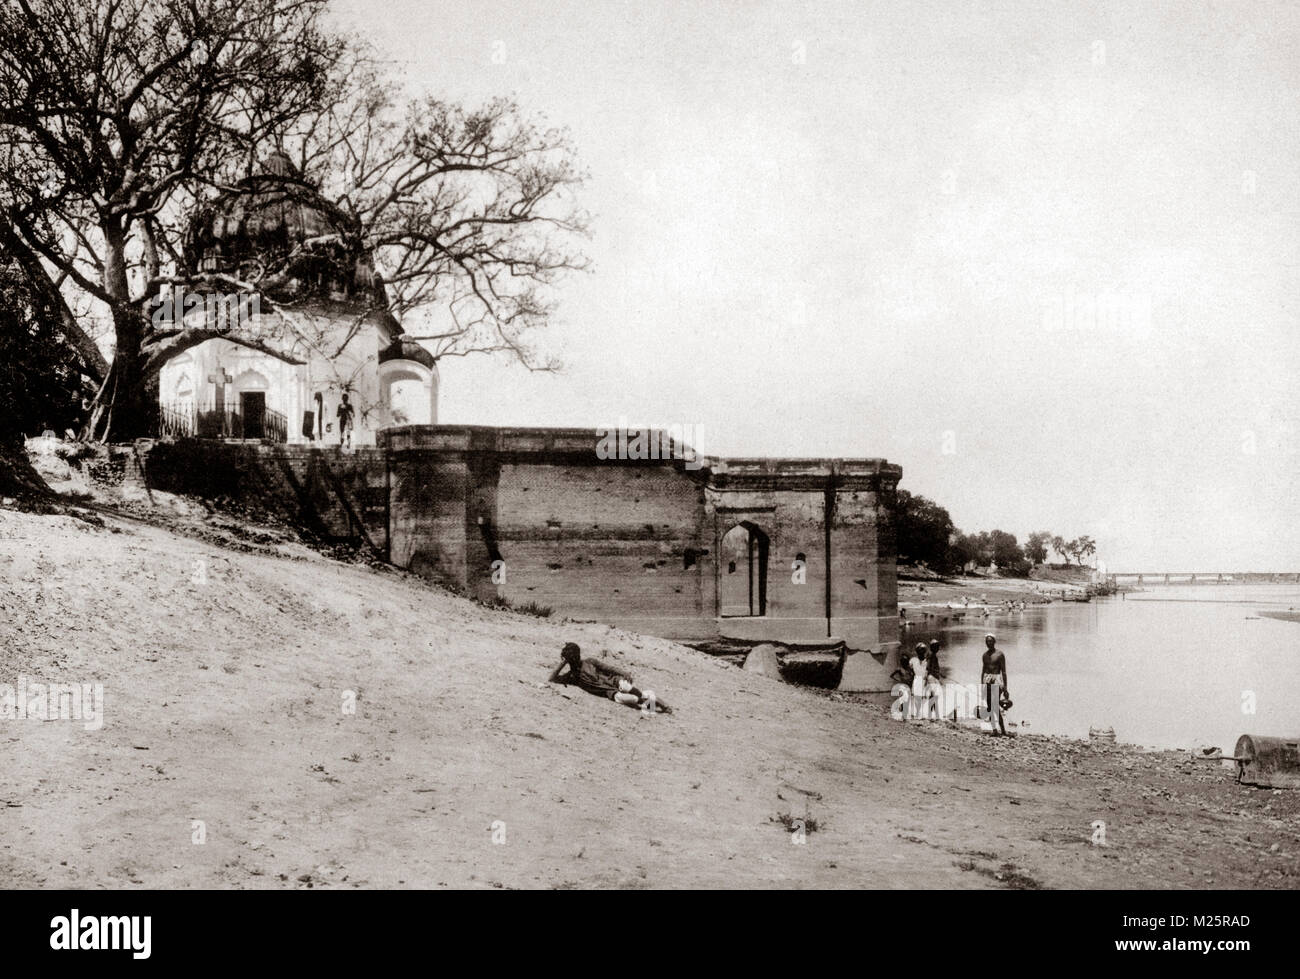 C. 1880 India - Satti Chaura Ghat o un massacro Ghat in Kanpur, Cawnpore, Uttar Pradesh, banca del fiume Gange - Scena di uccisione di 300 British uomini donne e bambini durante la ribellione indiana del 1857, Foto Stock